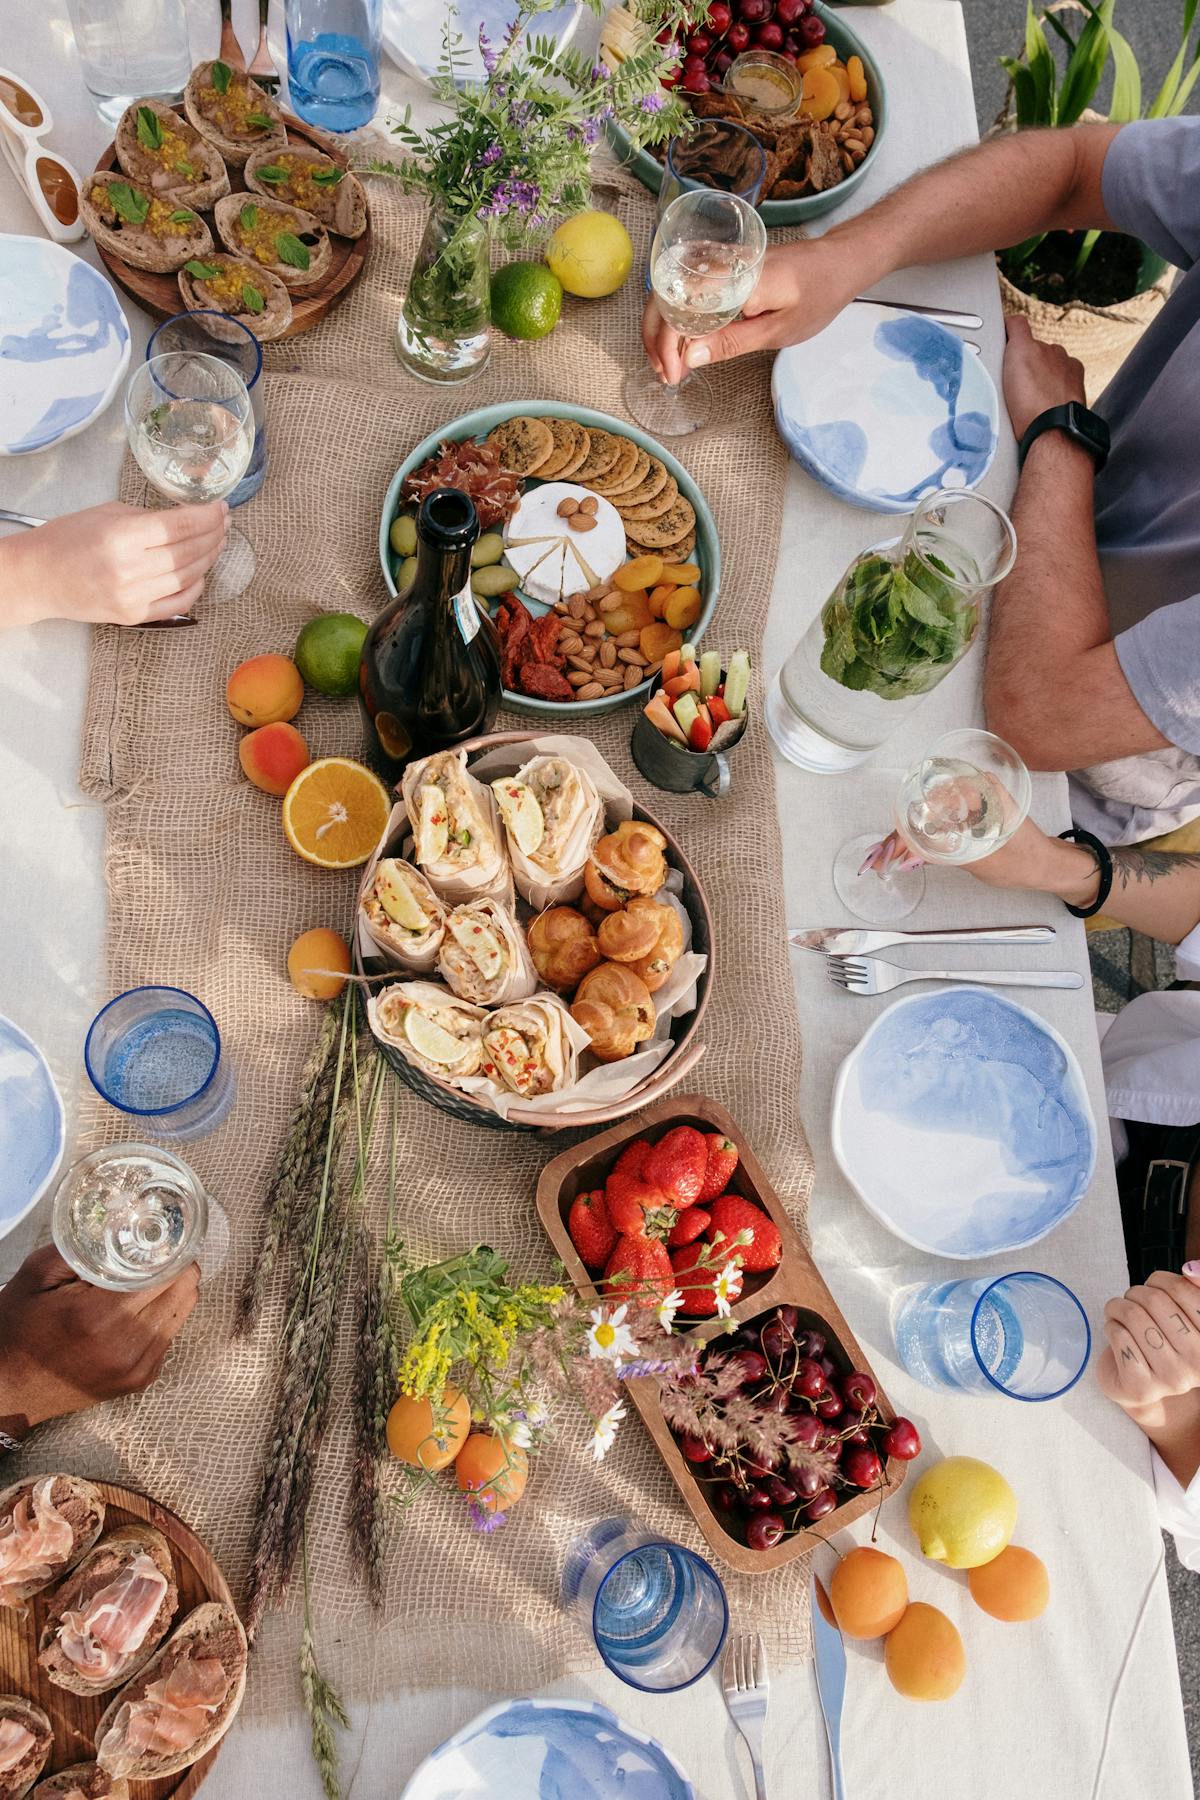 朋友们在野餐时举杯红酒 法式晚宴户外摄影师记录一群朋友吃午餐高清摄影大图-千库网